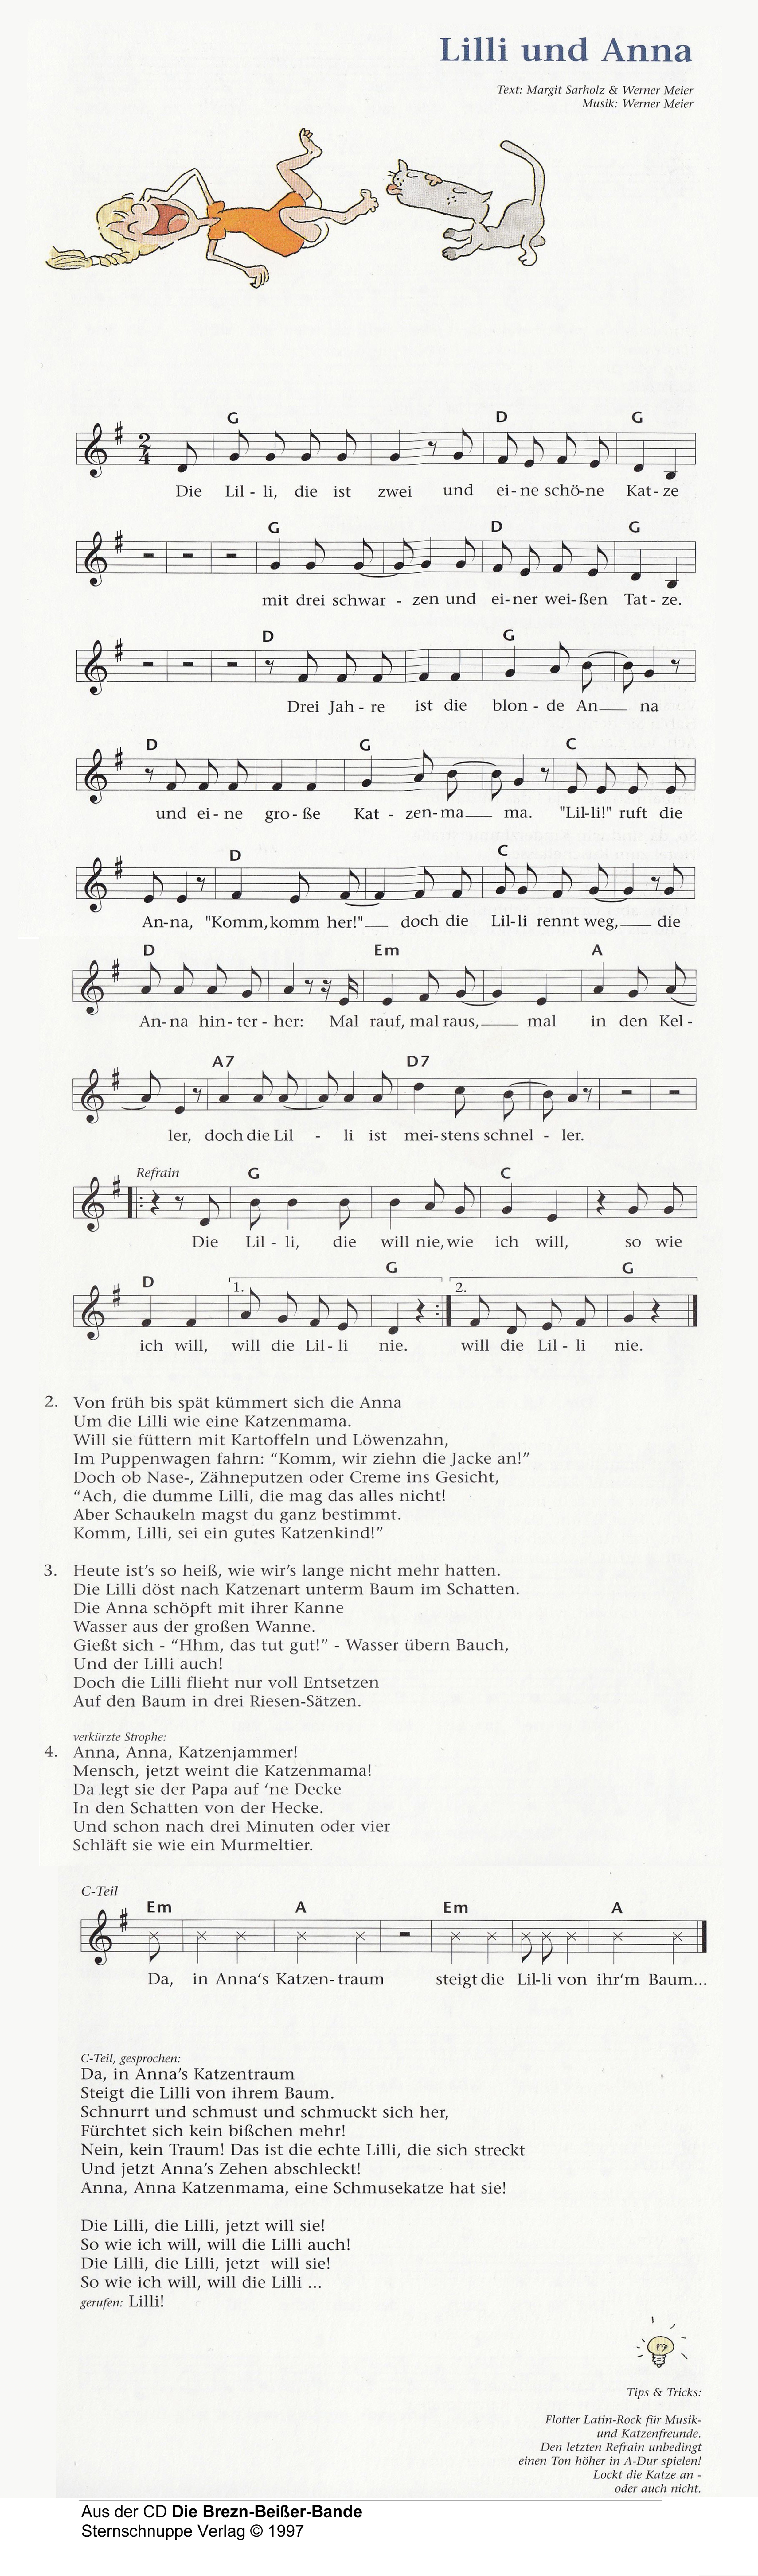 Liedtext, Akkorde und Noten vom Kinderlied Lilli und Anna